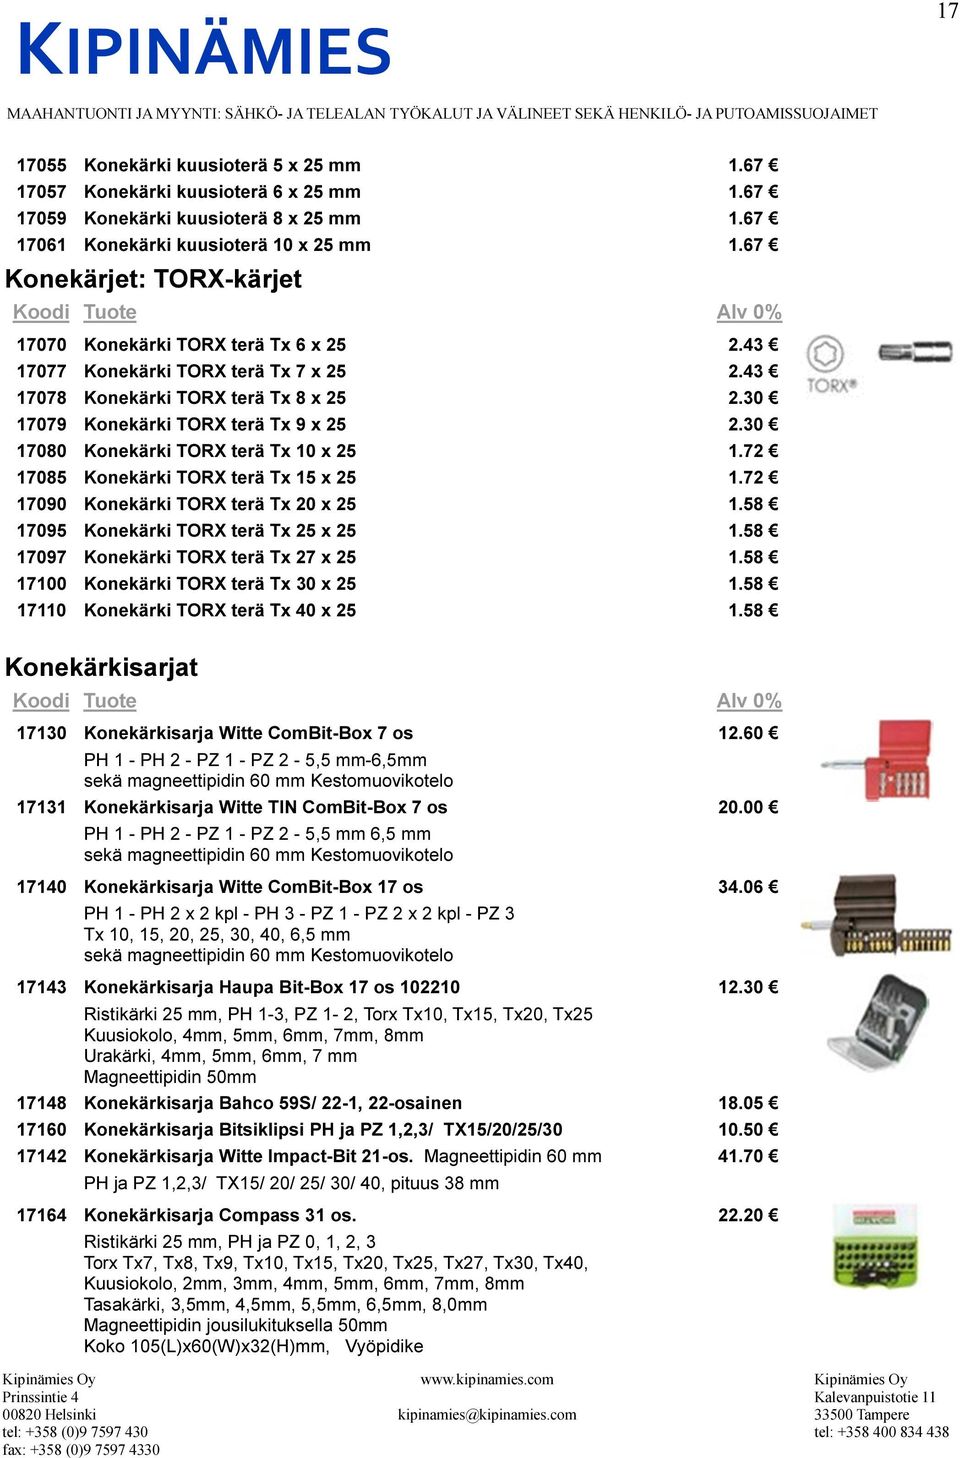 30 17080 Konekärki TORX terä Tx 10 x 25 1.72 17085 Konekärki TORX terä Tx 15 x 25 1.72 17090 Konekärki TORX terä Tx 20 x 25 1.58 17095 Konekärki TORX terä Tx 25 x 25 1.